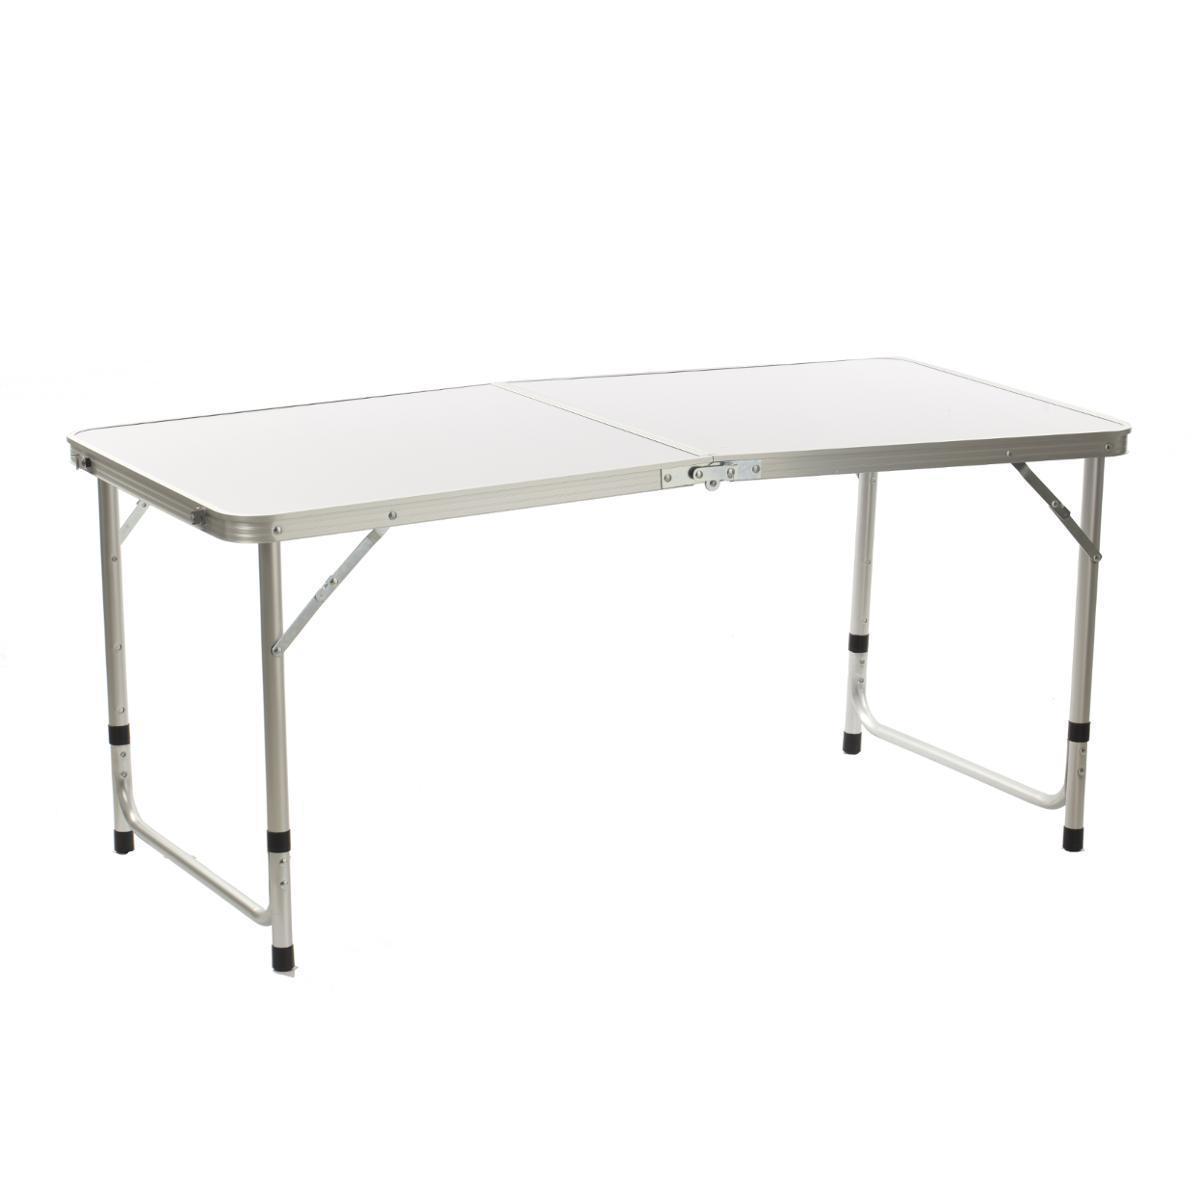 Table pliante en aluminium - 120 x 60 x 70 cm - Différents coloris